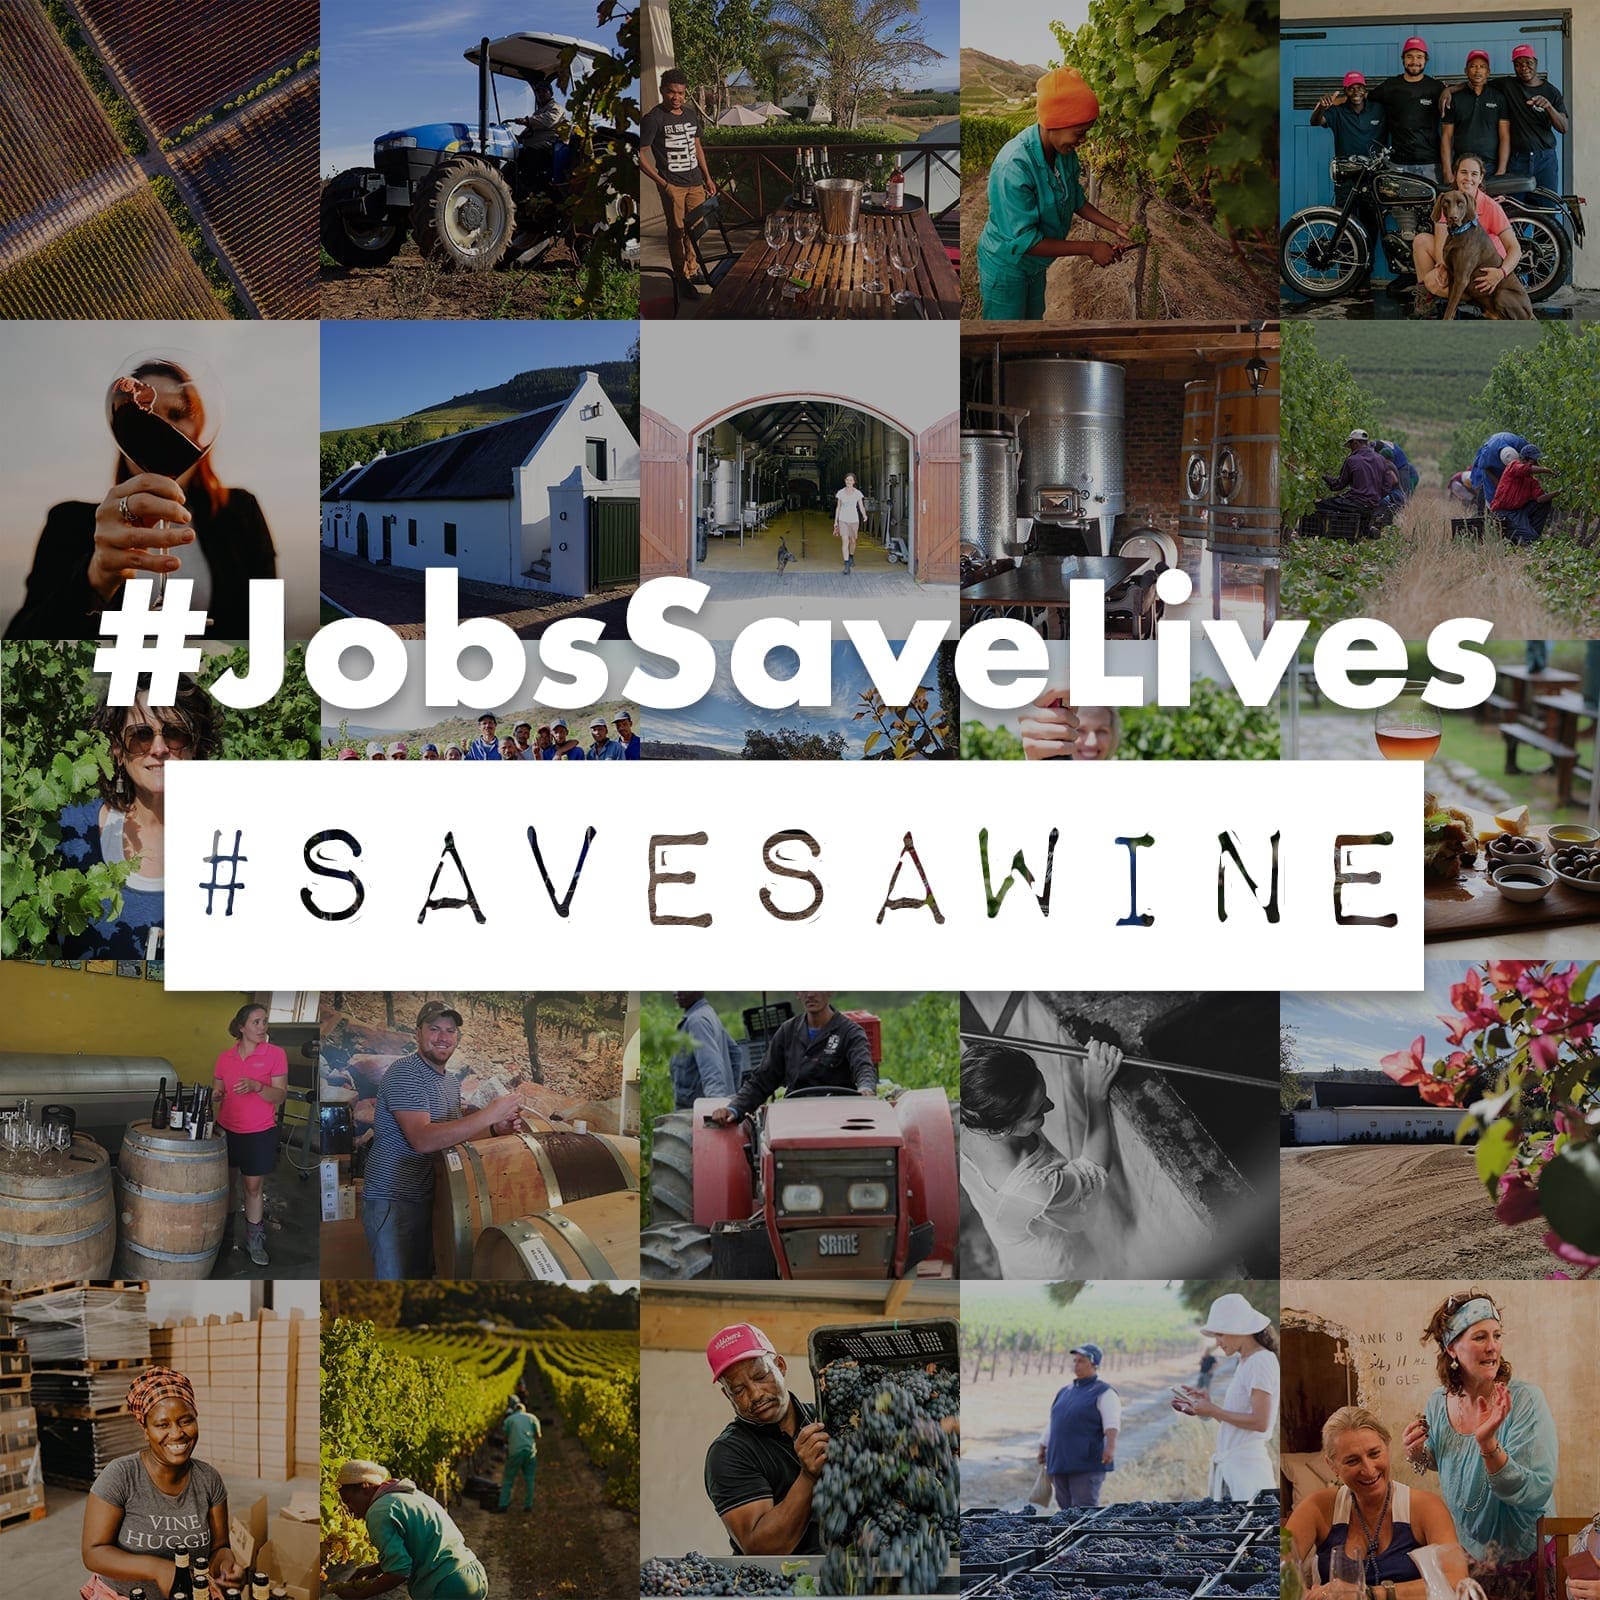 Südafrikanische Weine und Olivenöl - Save SA Wine Kampagne